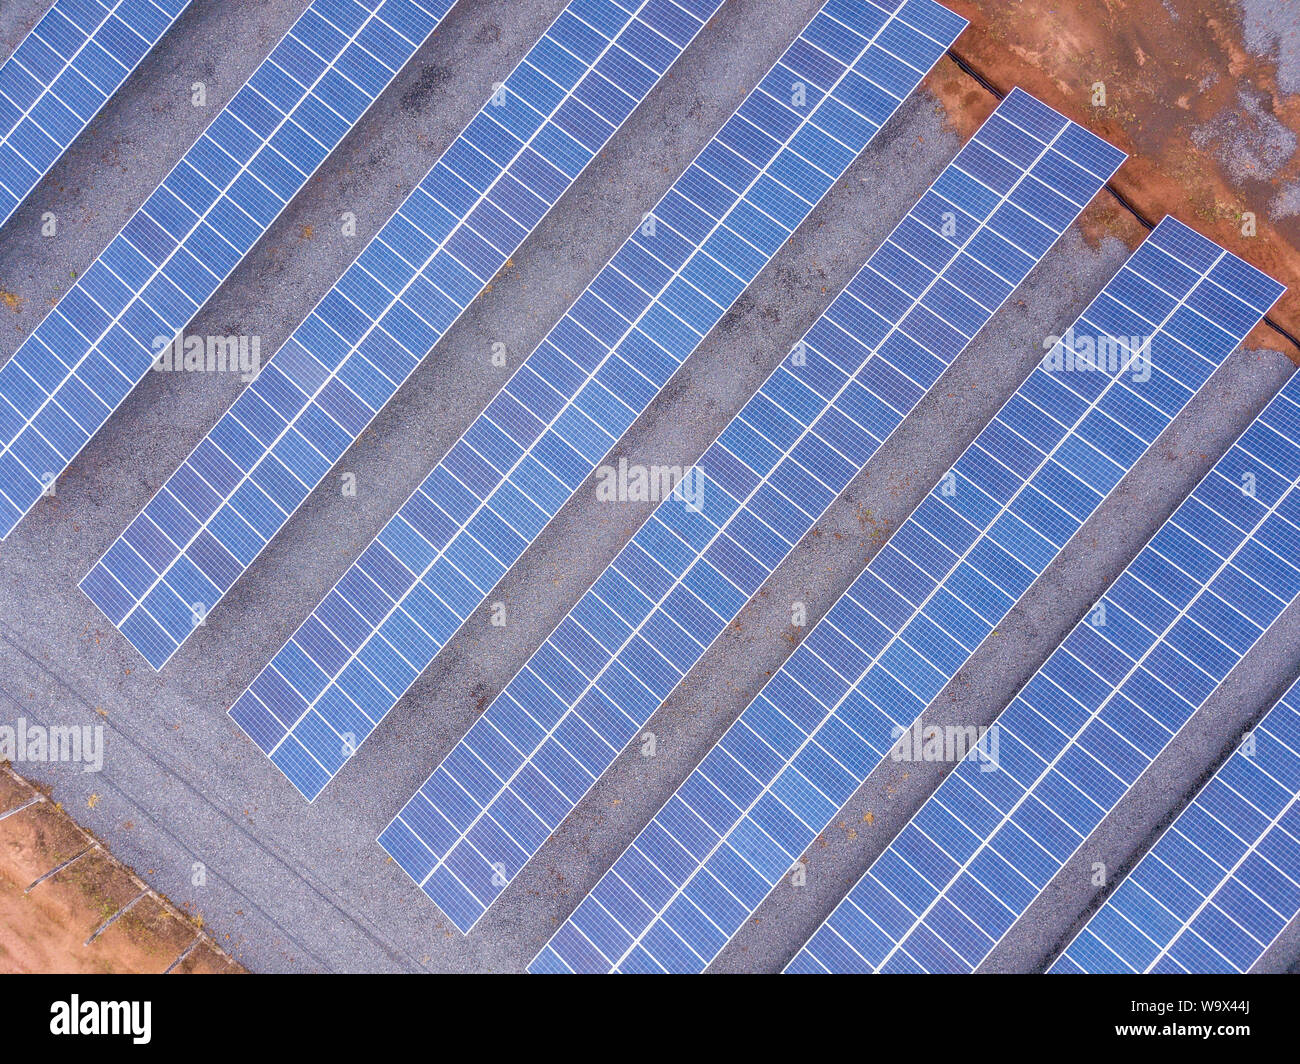 Vue aérienne de l'usine de panneaux solaires à l'aide de l'énergie propre et renouvelable. Drone abattu dans l'état de Mato Grosso, Brésil. Concept de l'environnement, zéro voiture Banque D'Images